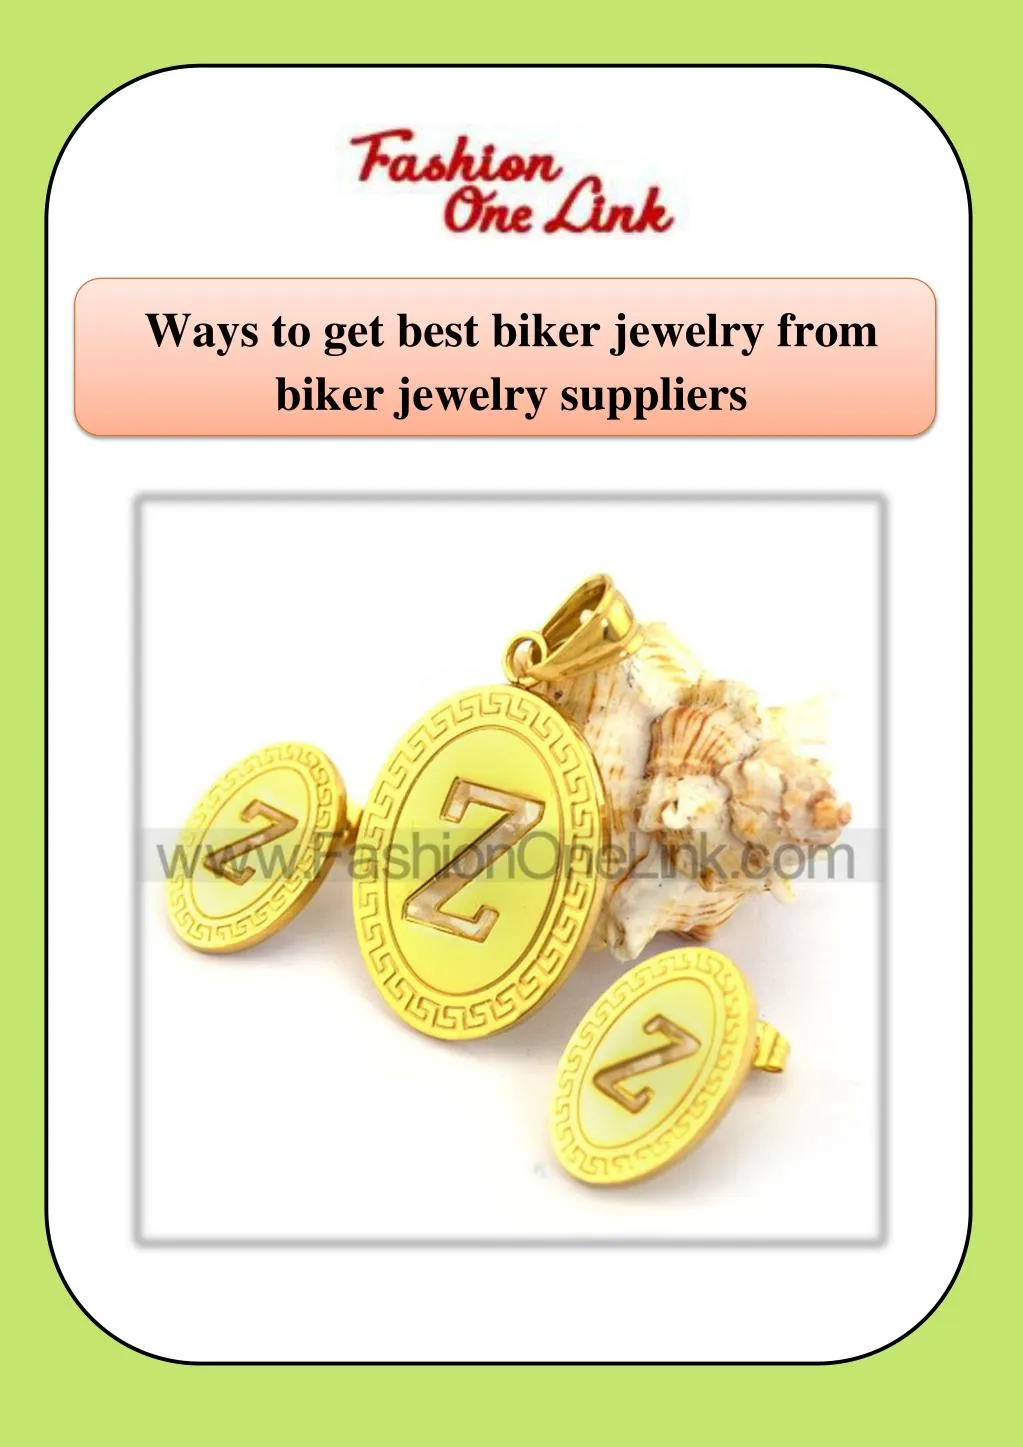 ways to get best biker jewelry from biker jewelry